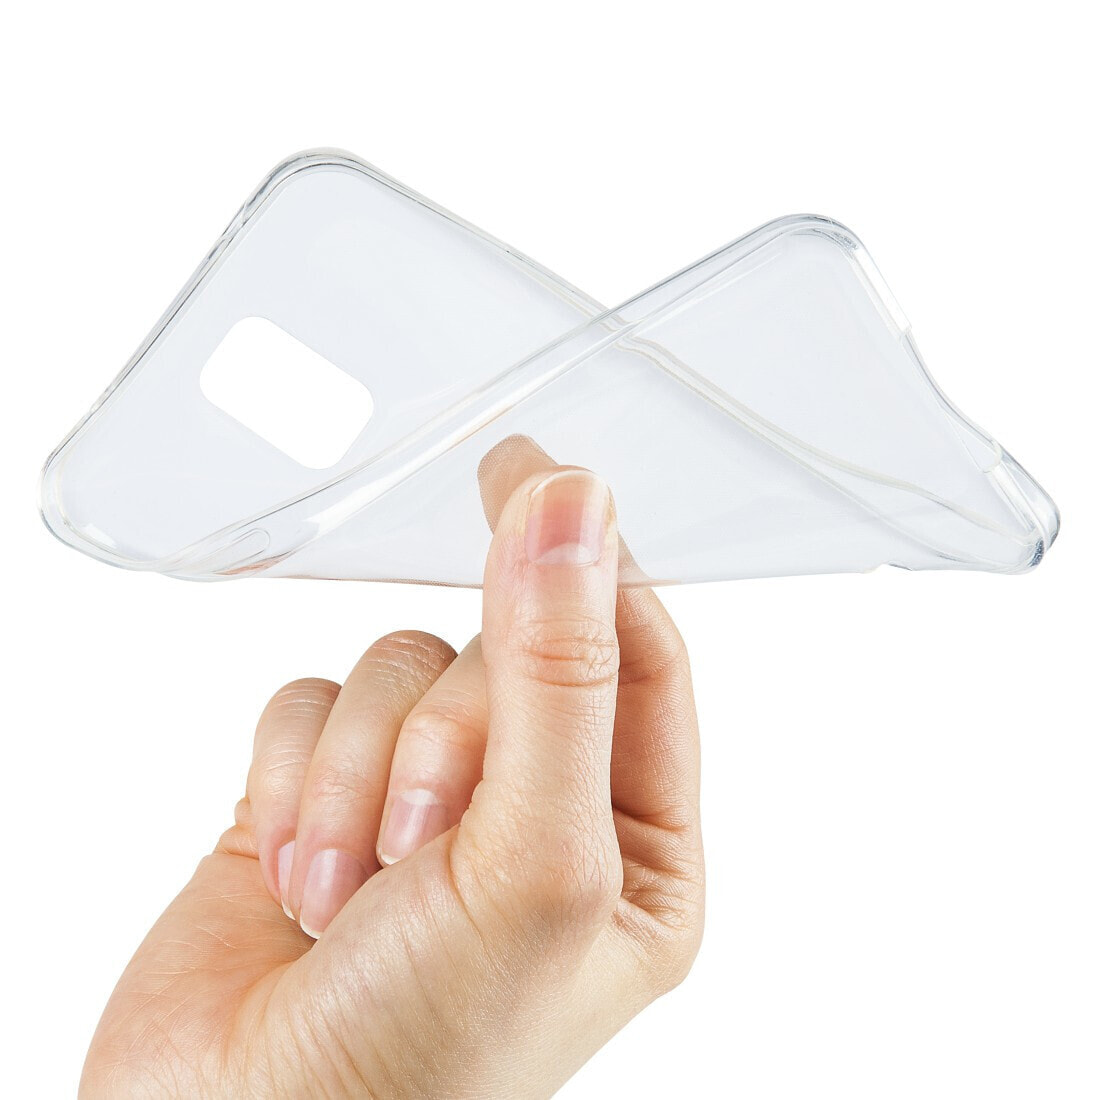 Hama Crystal Clear чехол для мобильного телефона Крышка Прозрачный 00188808